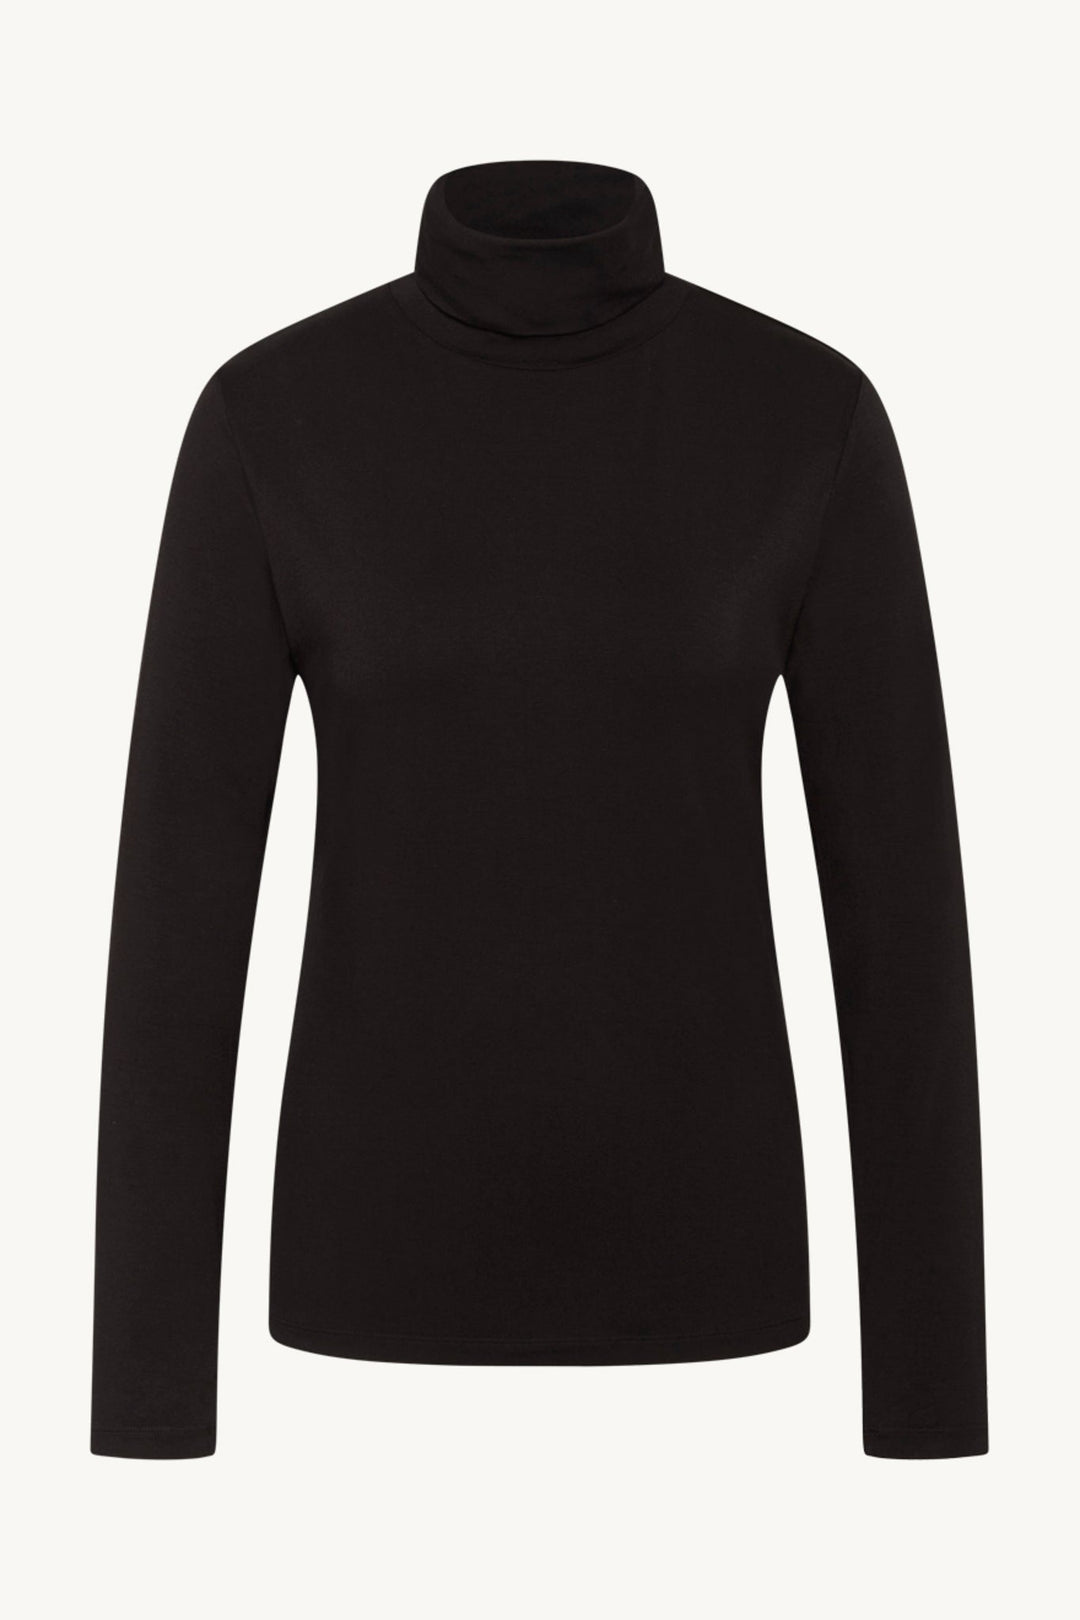 Amaris-Cw - T-Shirt Black | Skjorter og bluser | Smuk - Dameklær på nett